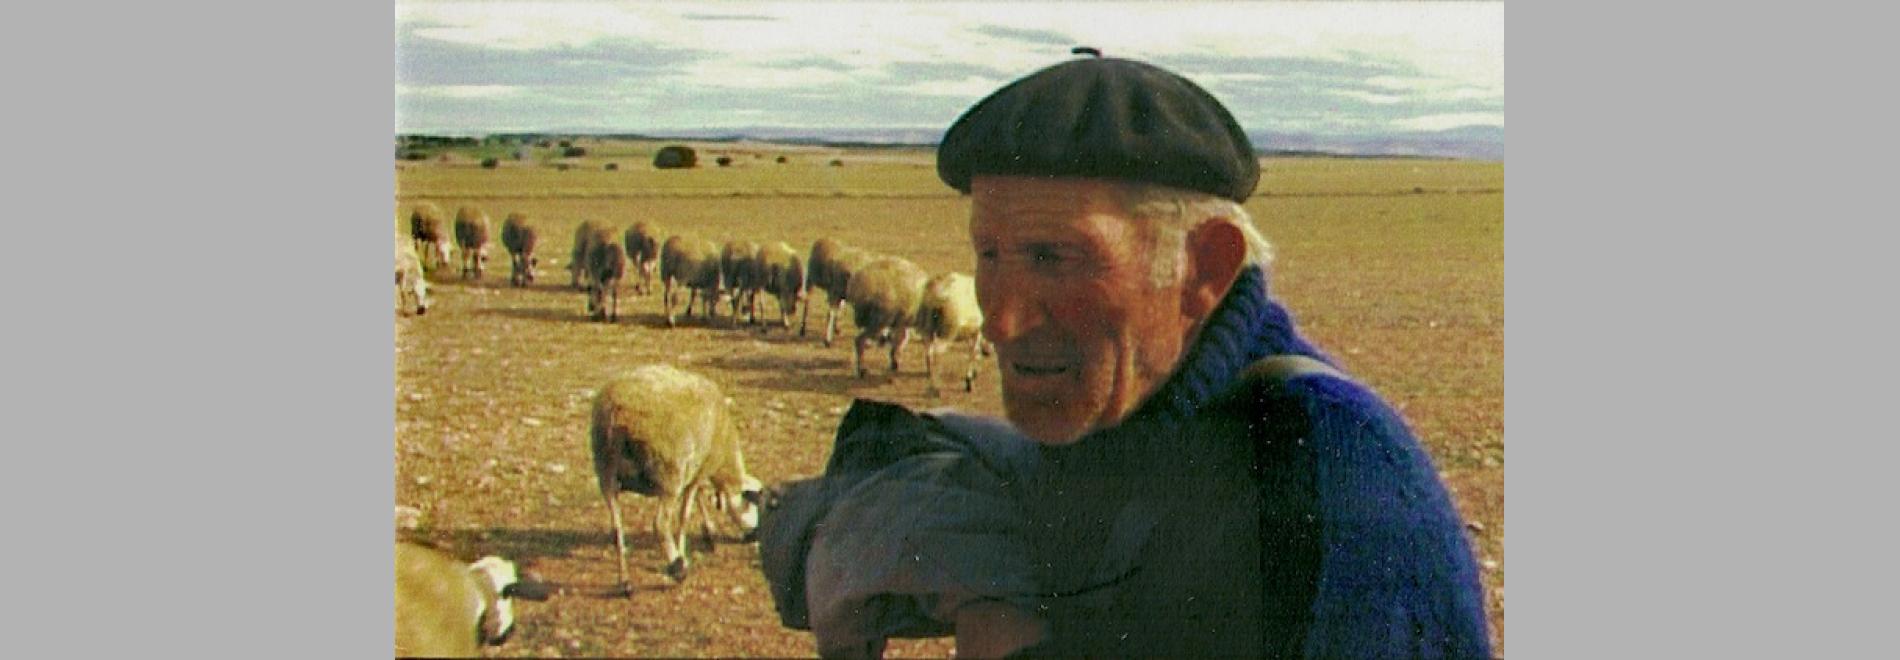 Oliete, un pueblo de otra España (Pere Alberó, 2003)